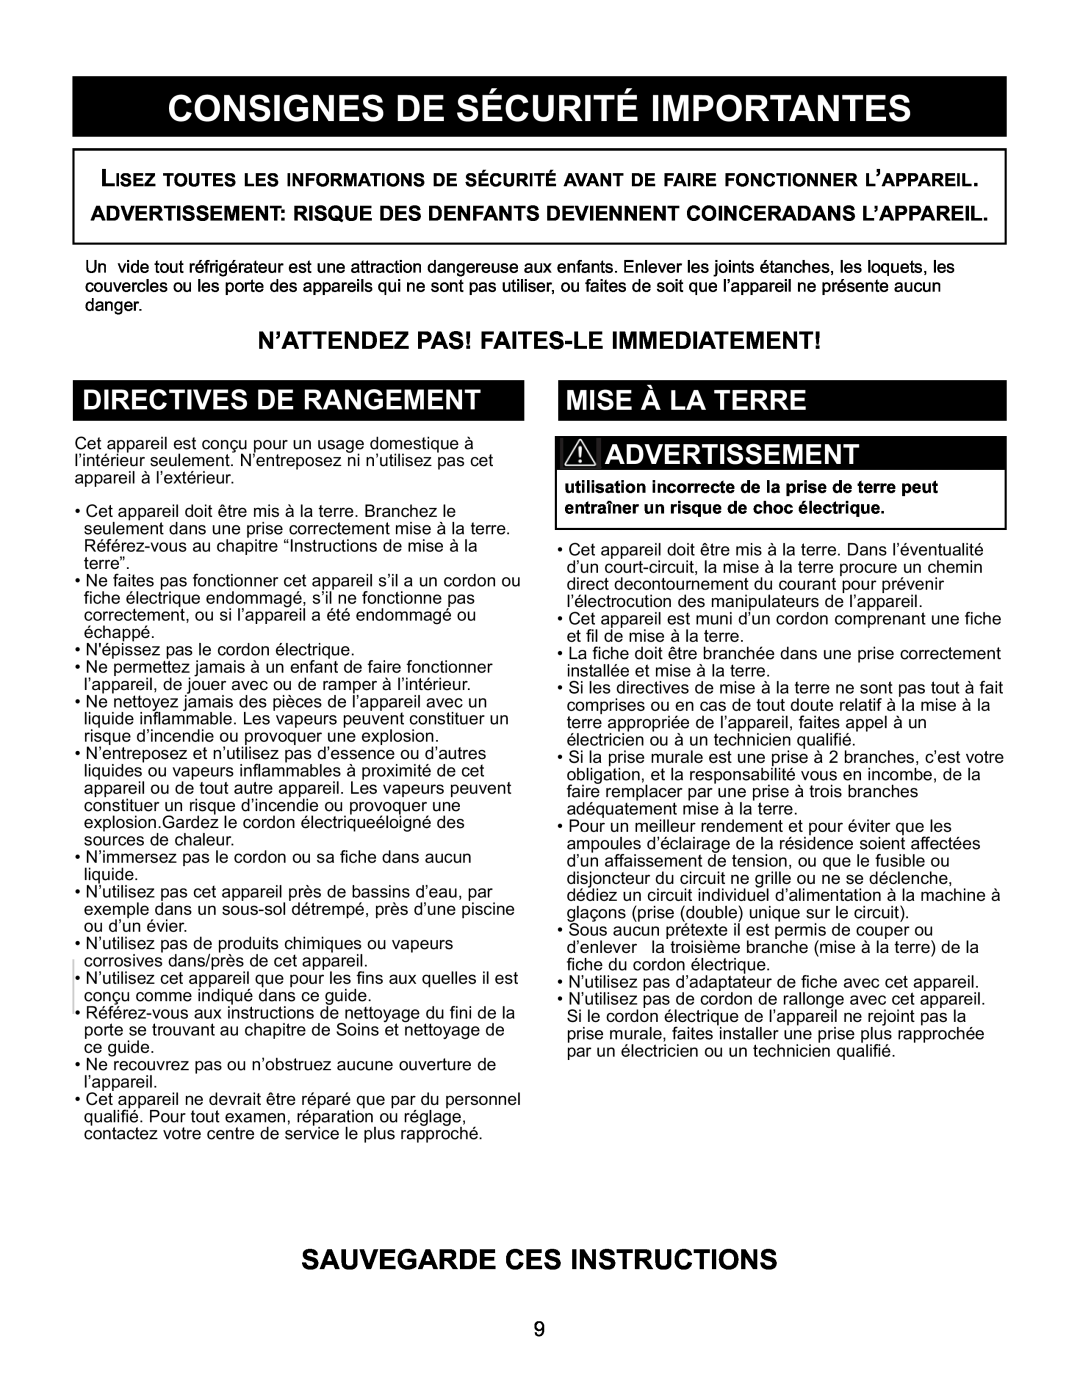 Danby DAR154BLSST manual Consignes De Sécurité Importantes, Directives De Rangement, Mise À La Terre Advertissement 